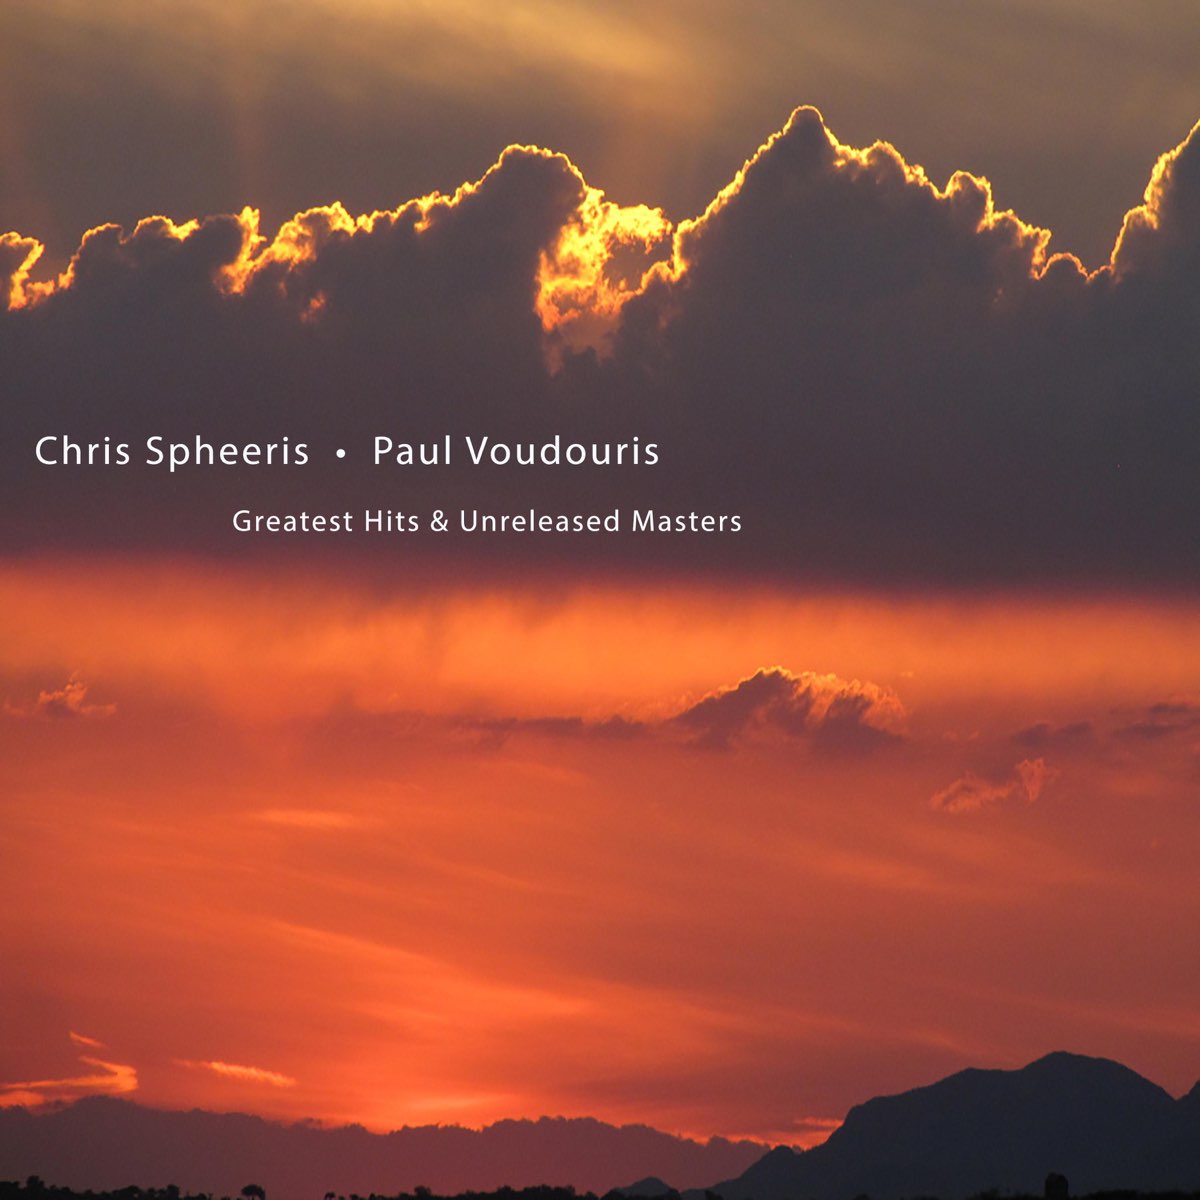 Greatest Hits Unreleased Masters By Chris Spheeris Paul Voudouris On Apple Music